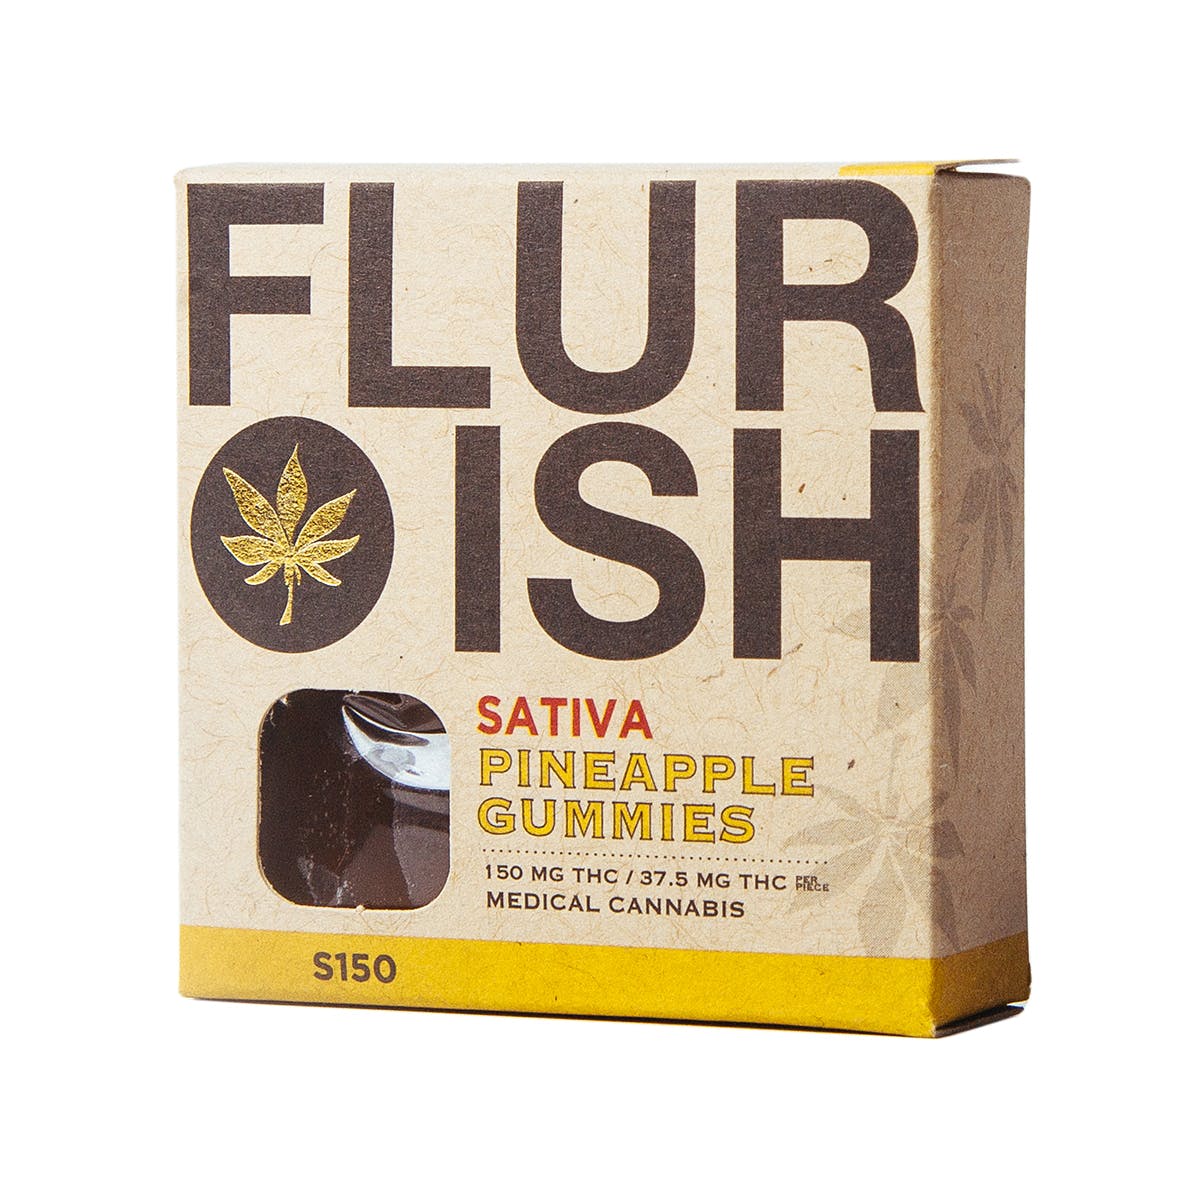 marijuana-dispensaries-best-of-buddha-in-whittier-pineapple-gummies-2c-sativa-150mg